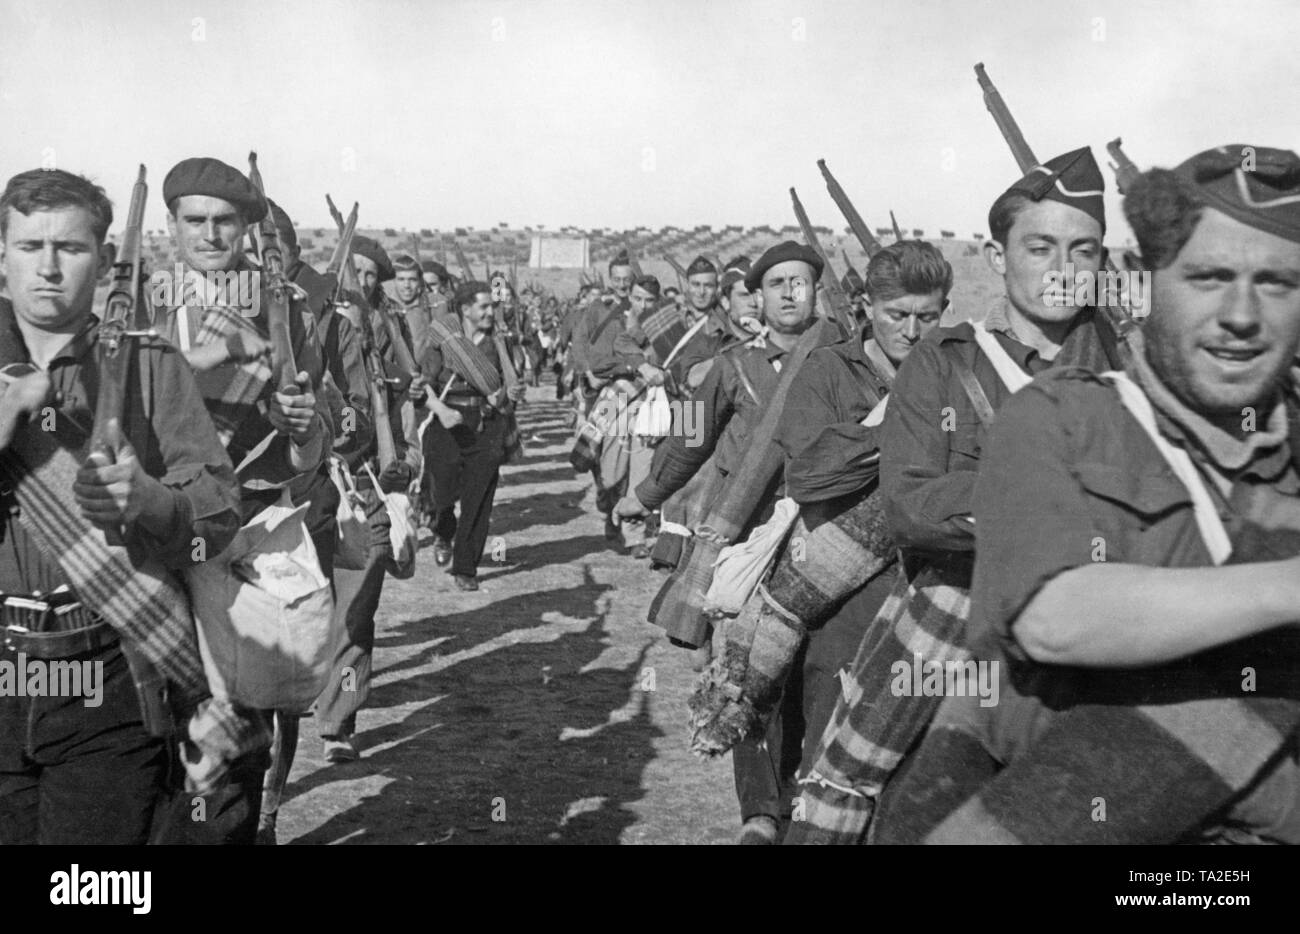 foto-de-voluntarios-del-falangists-durante-un-ejercicio-en-la-guerra-civil-espanola-en-1937-los-soldados-visten-los-camisas-azules-del-partido-fascista-de-espana-falange-espanola-estan-armados-con-mosquetones-y-llevar-campo-pack-ta2e5h.jpg